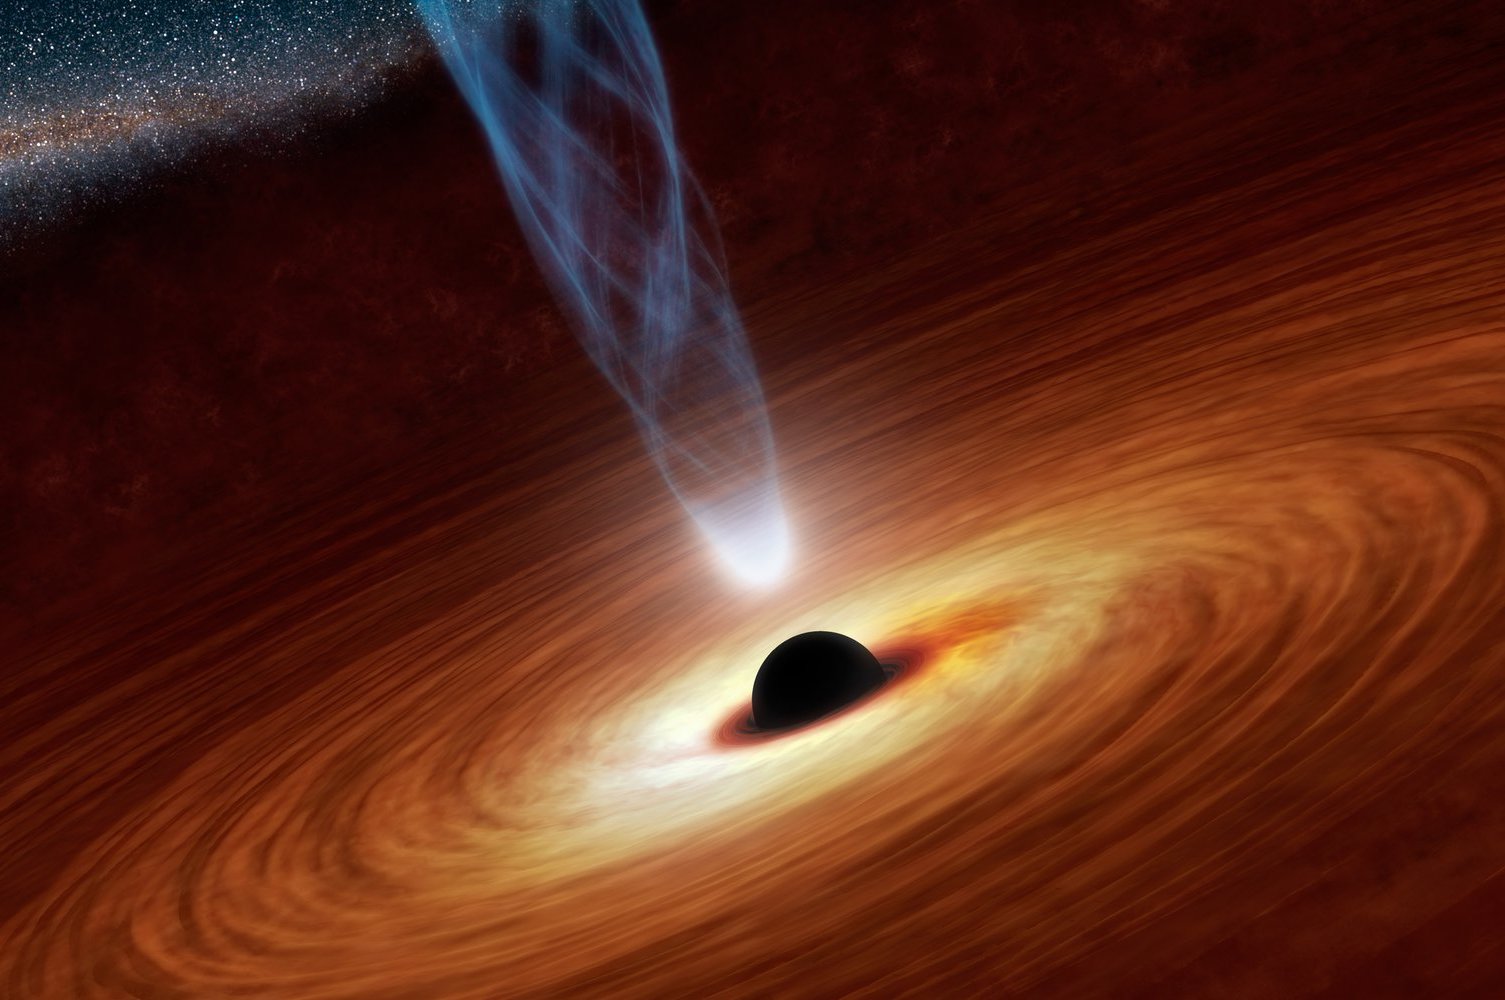 Ролик о самых притягательных созданиях Вселенной: как образуются черные дыры?